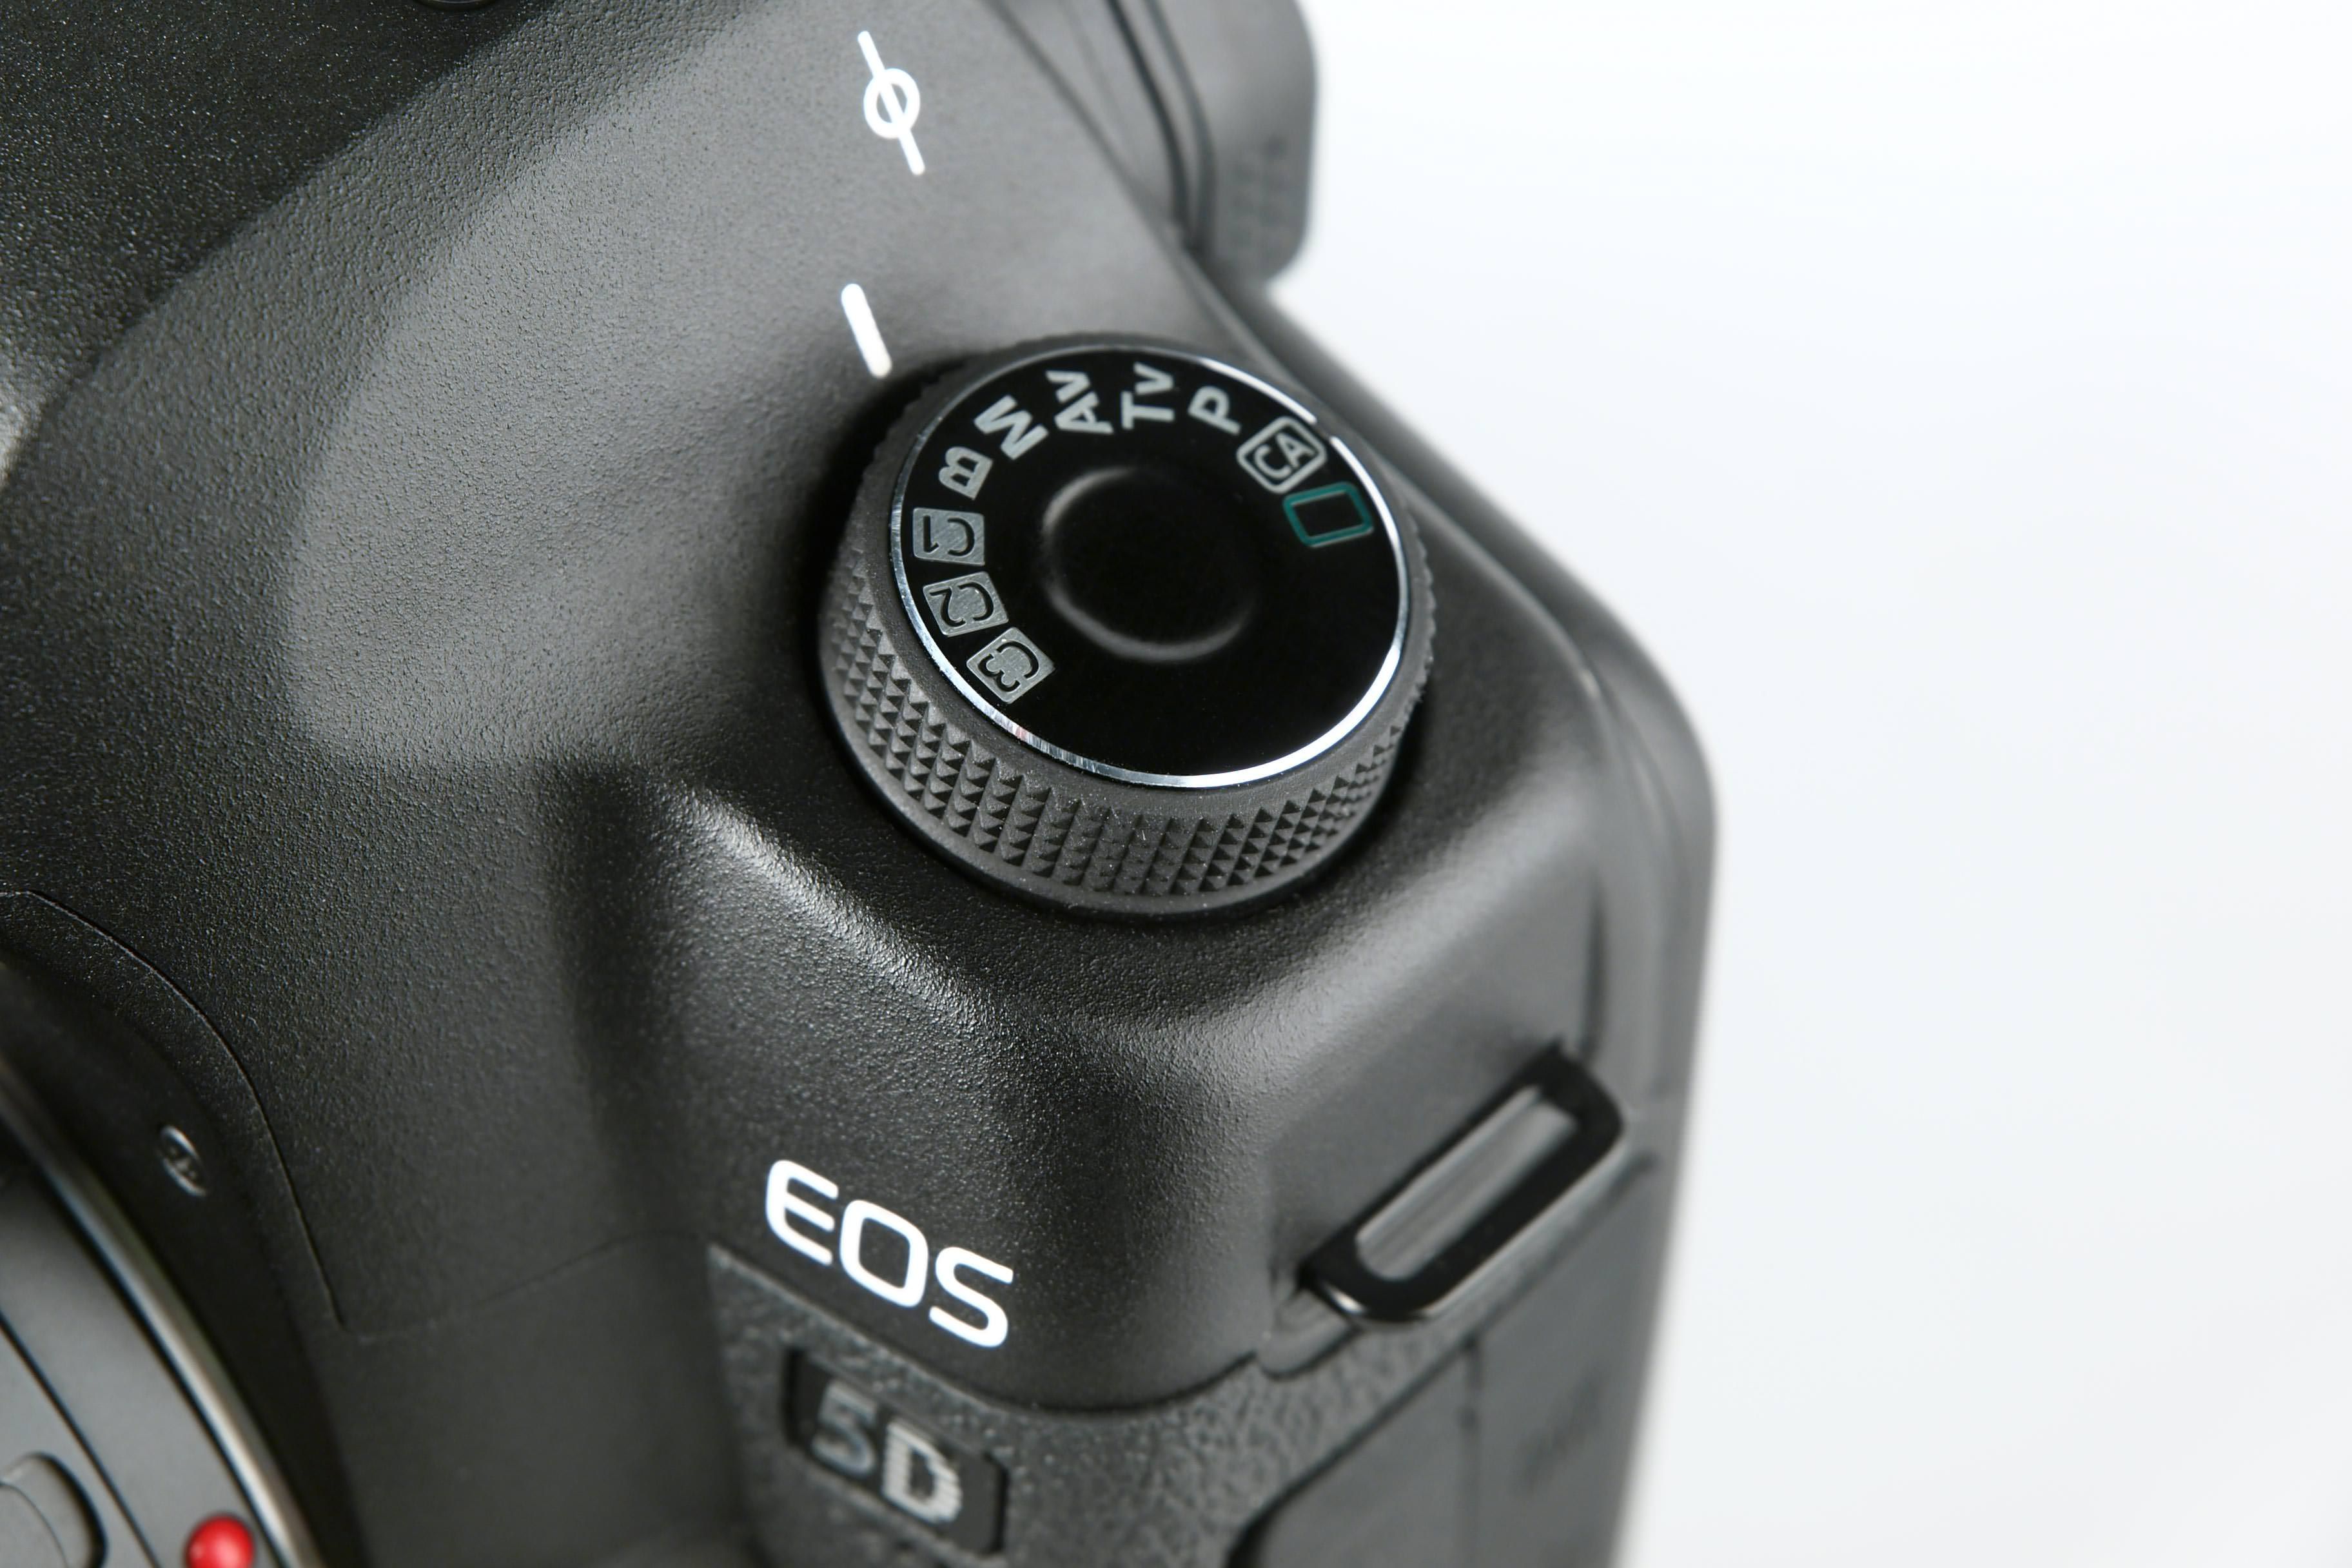 Canon Eos 5d Mk2 Command Dial